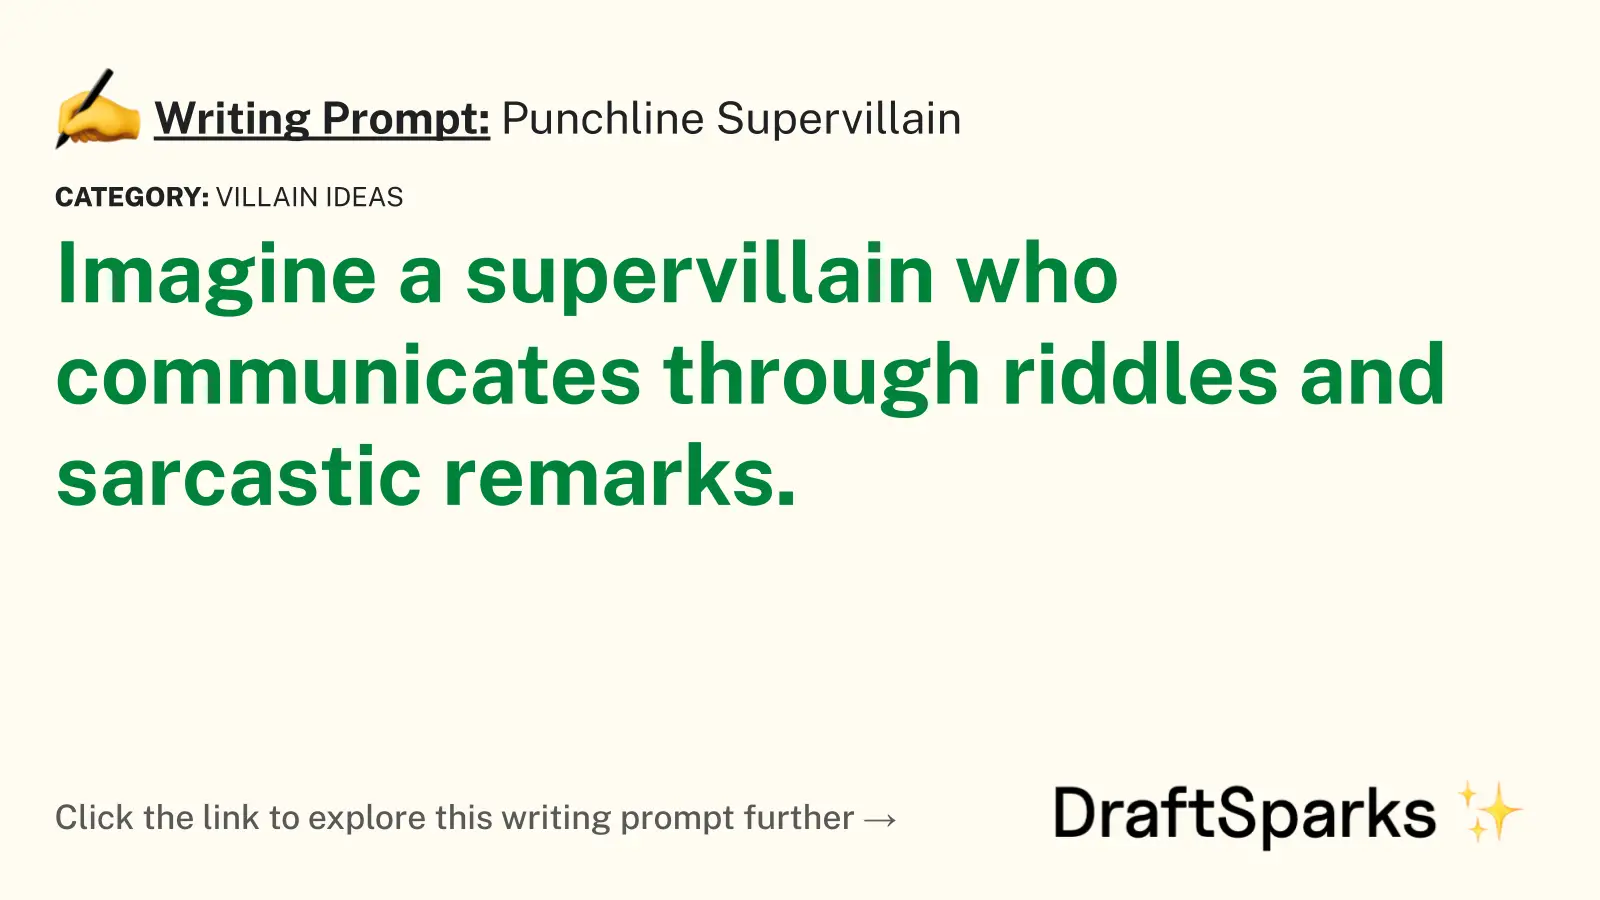 Punchline Supervillain